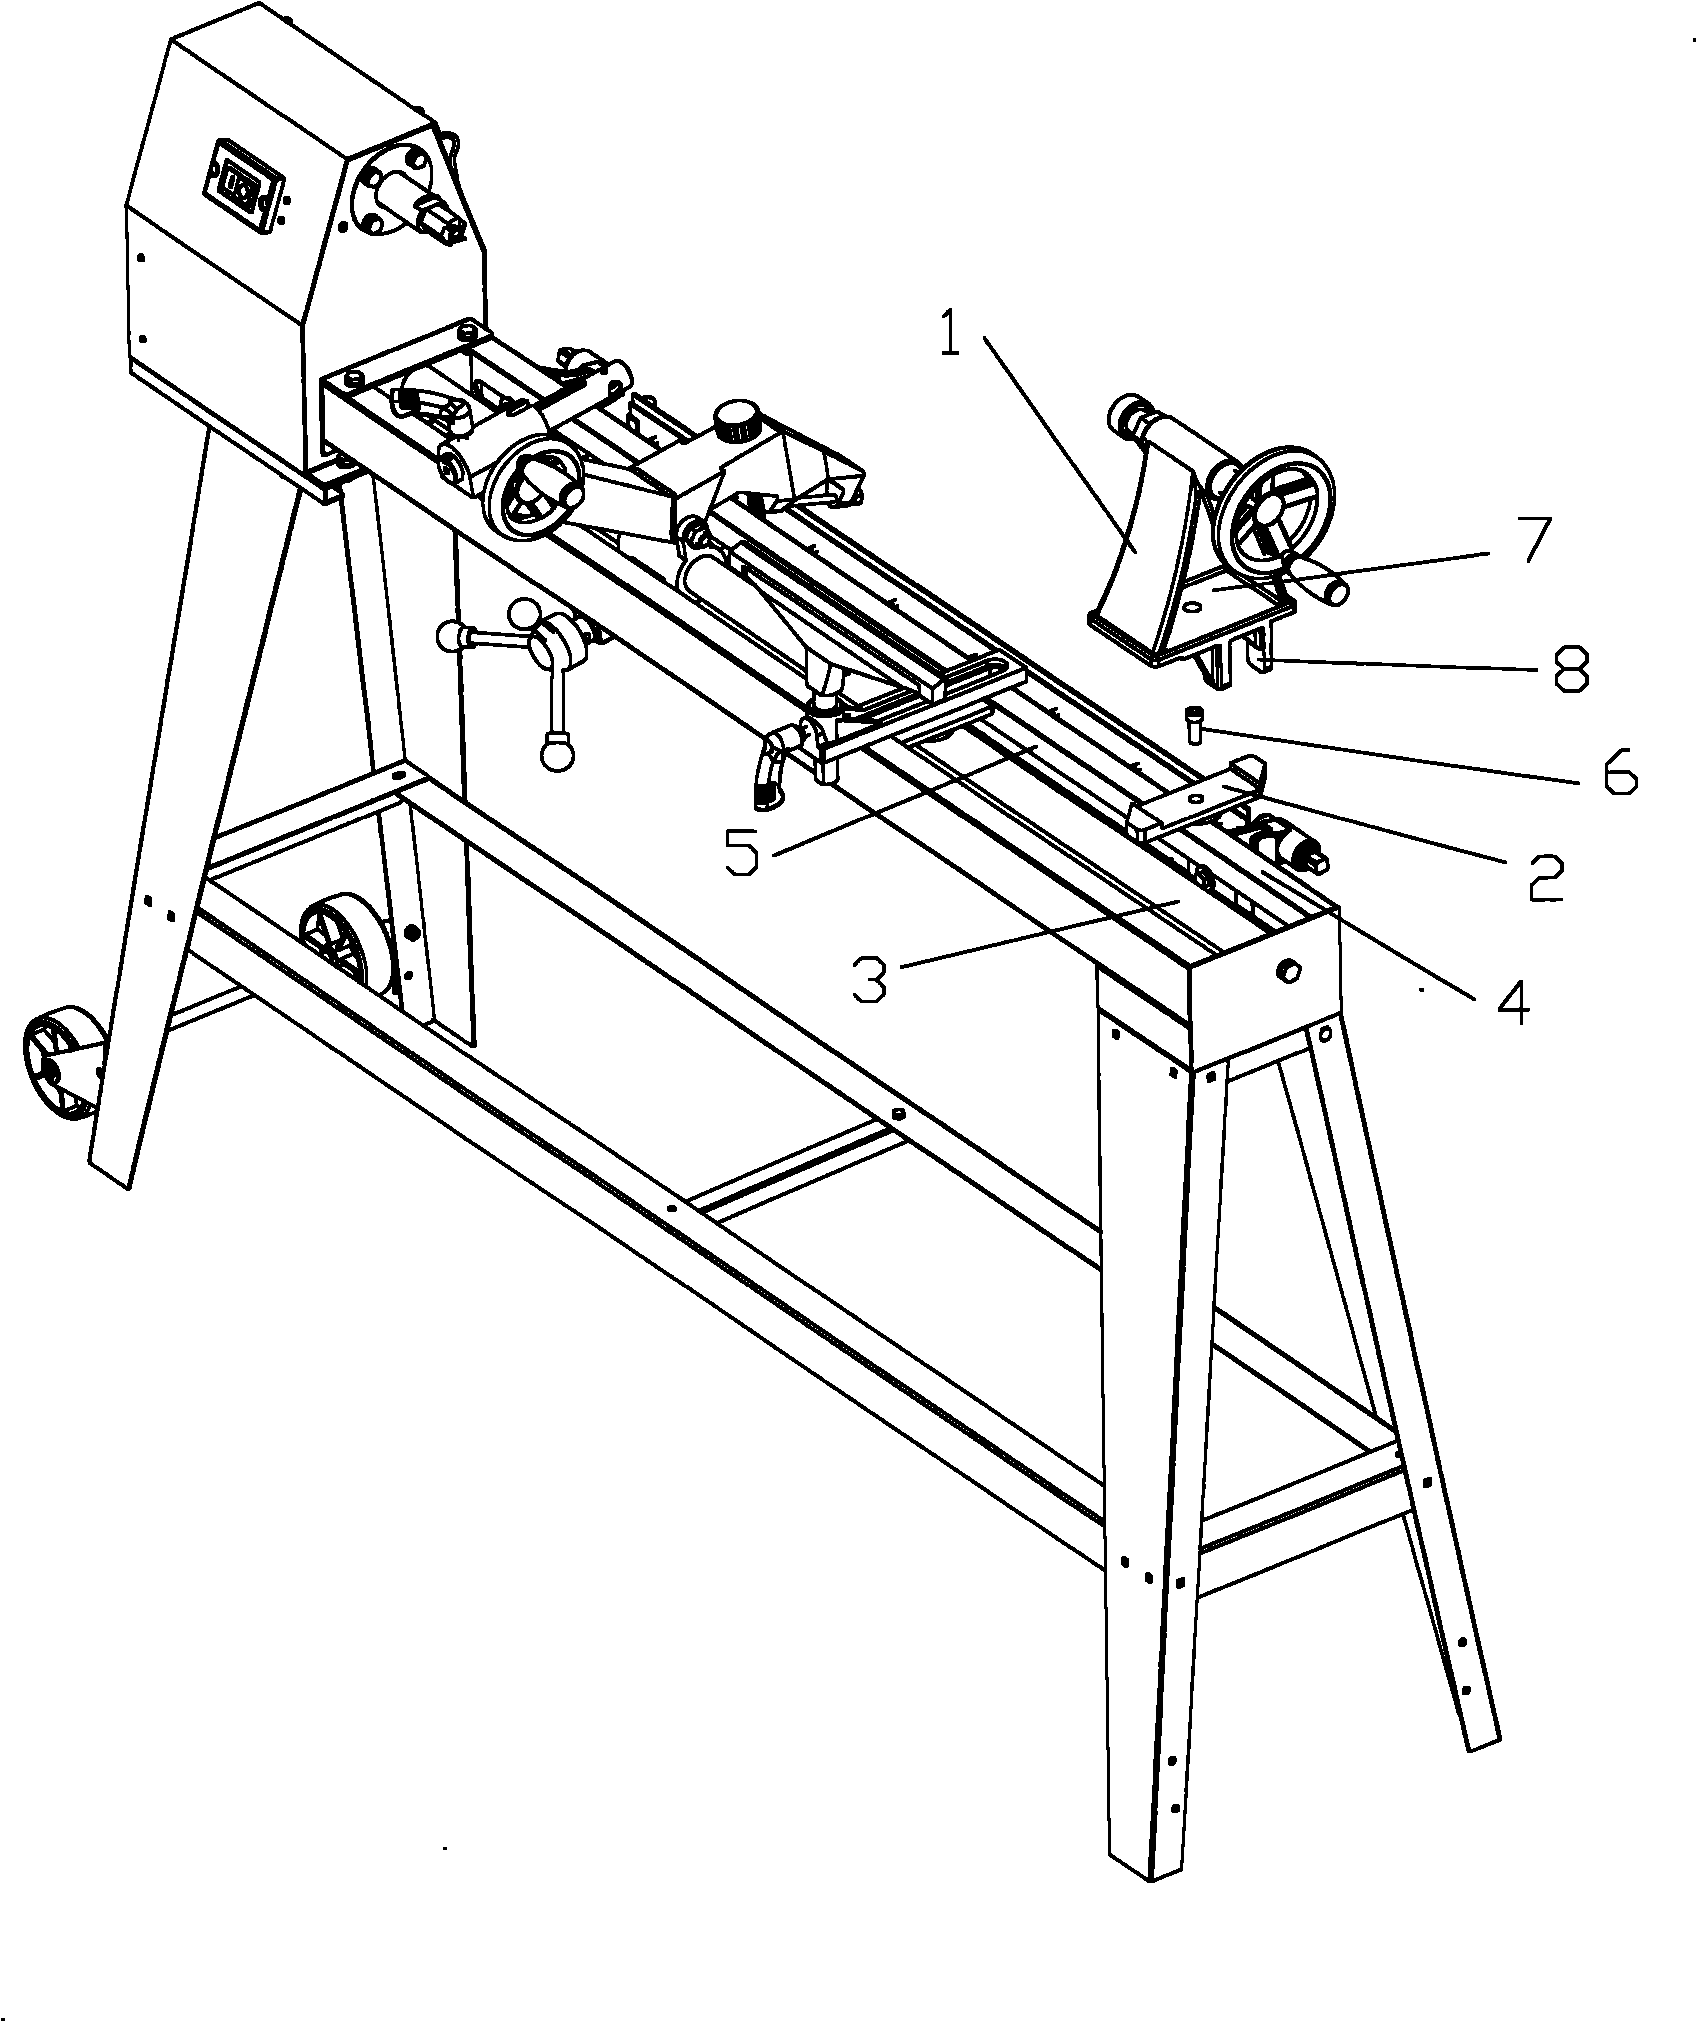 Sliding device of profiling woodwork lathe